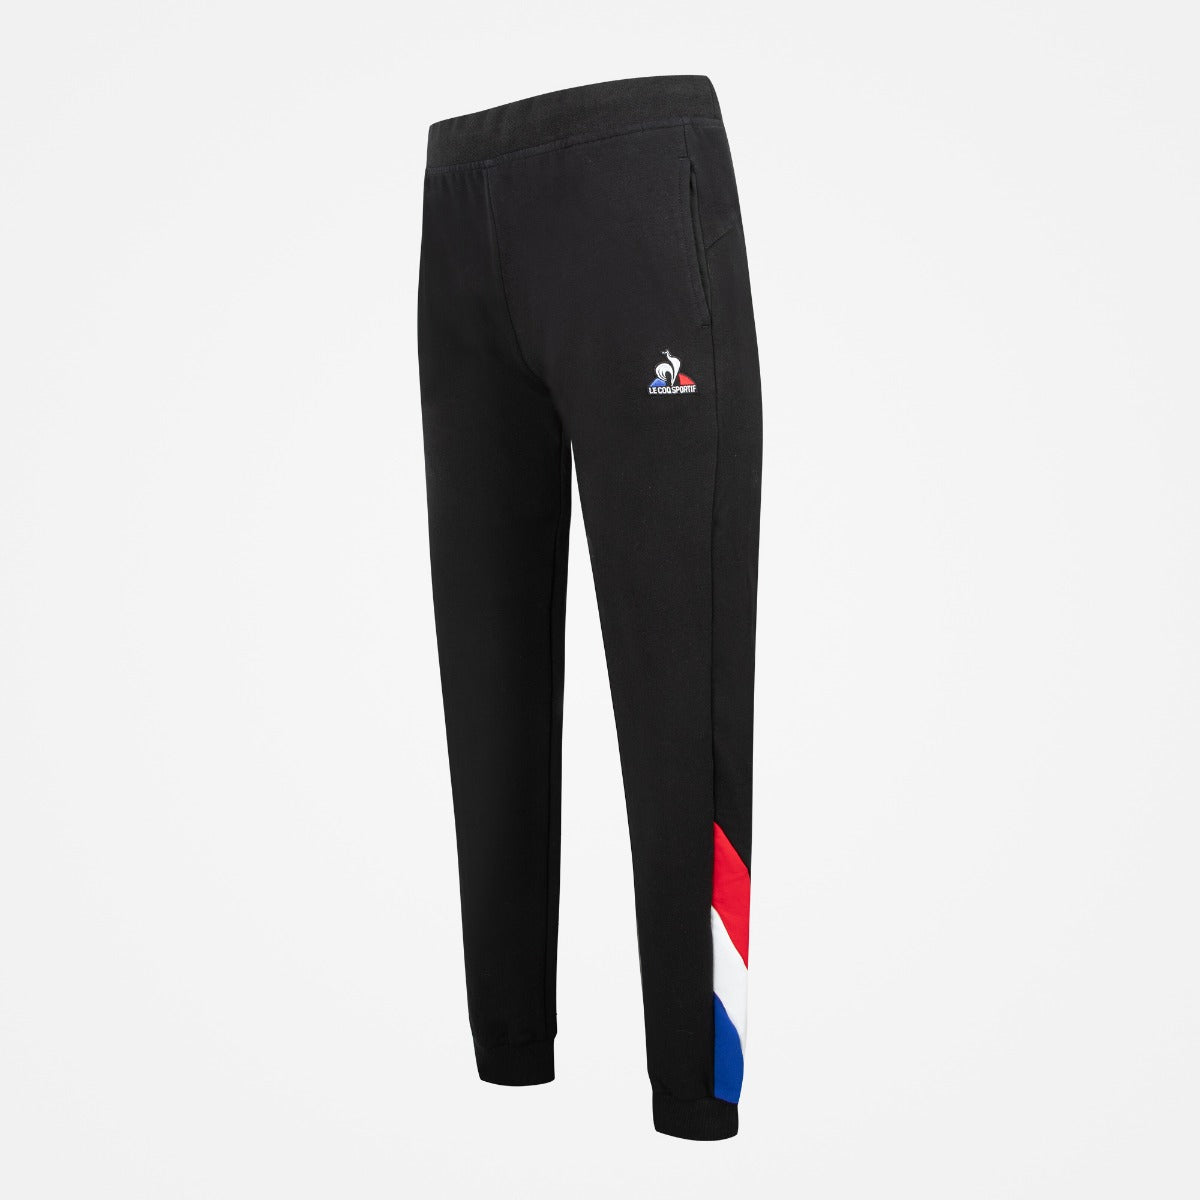 Le Coq Sportif Tricolor Jogging Pants - Black 